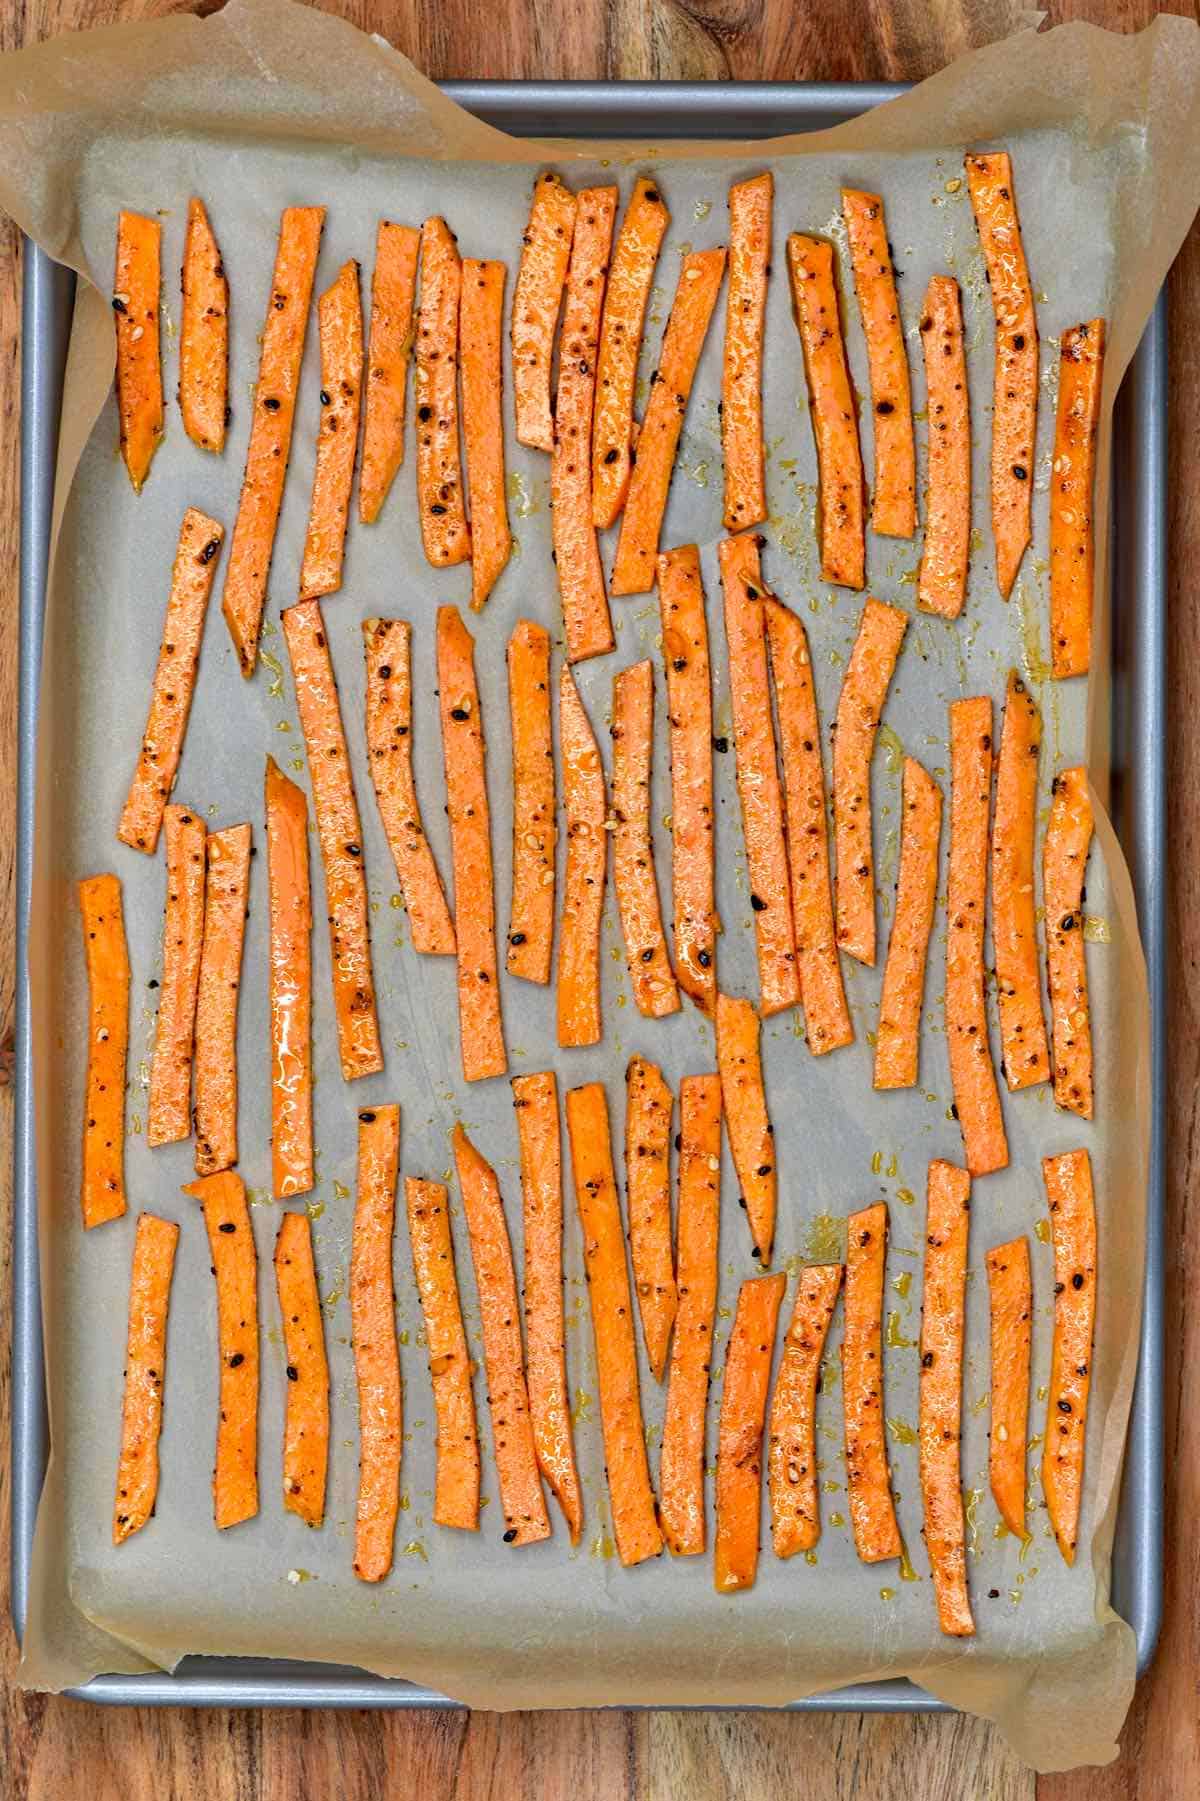 Sweet potato fried arranged in a baking tray